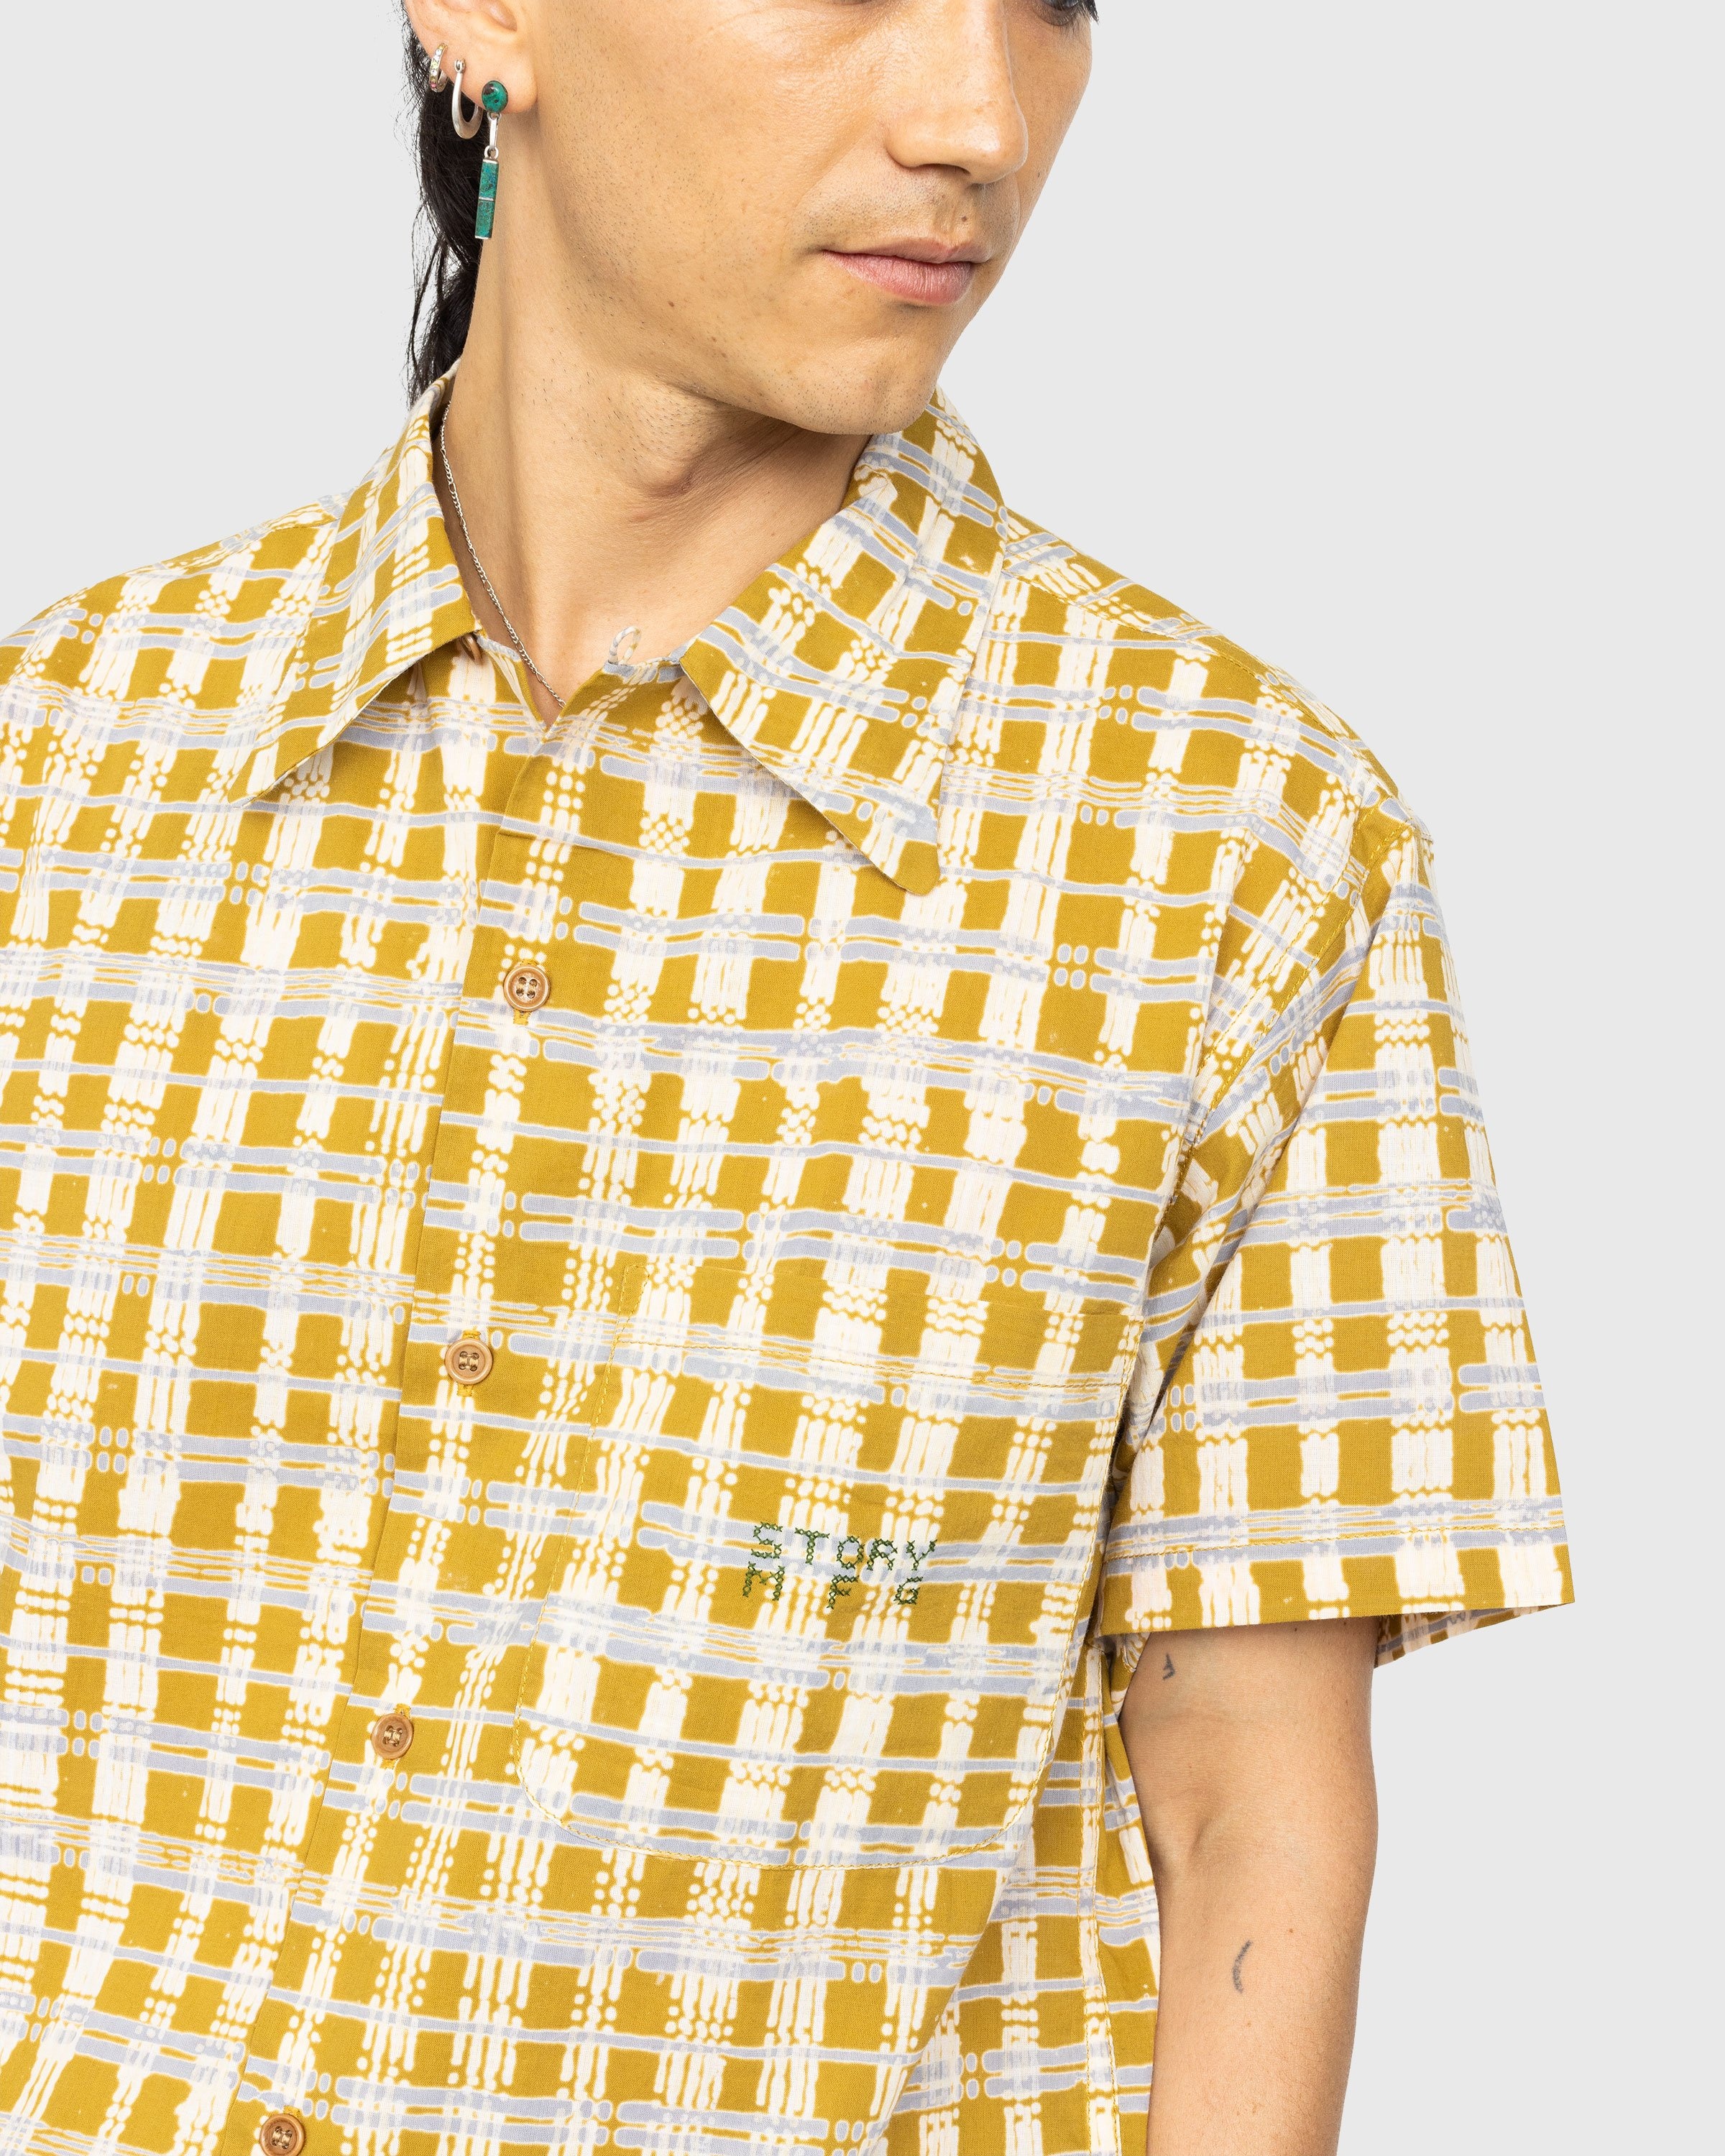 Story mfg. – Shore Shirt Check Block - Shirts - Yellow - Image 4